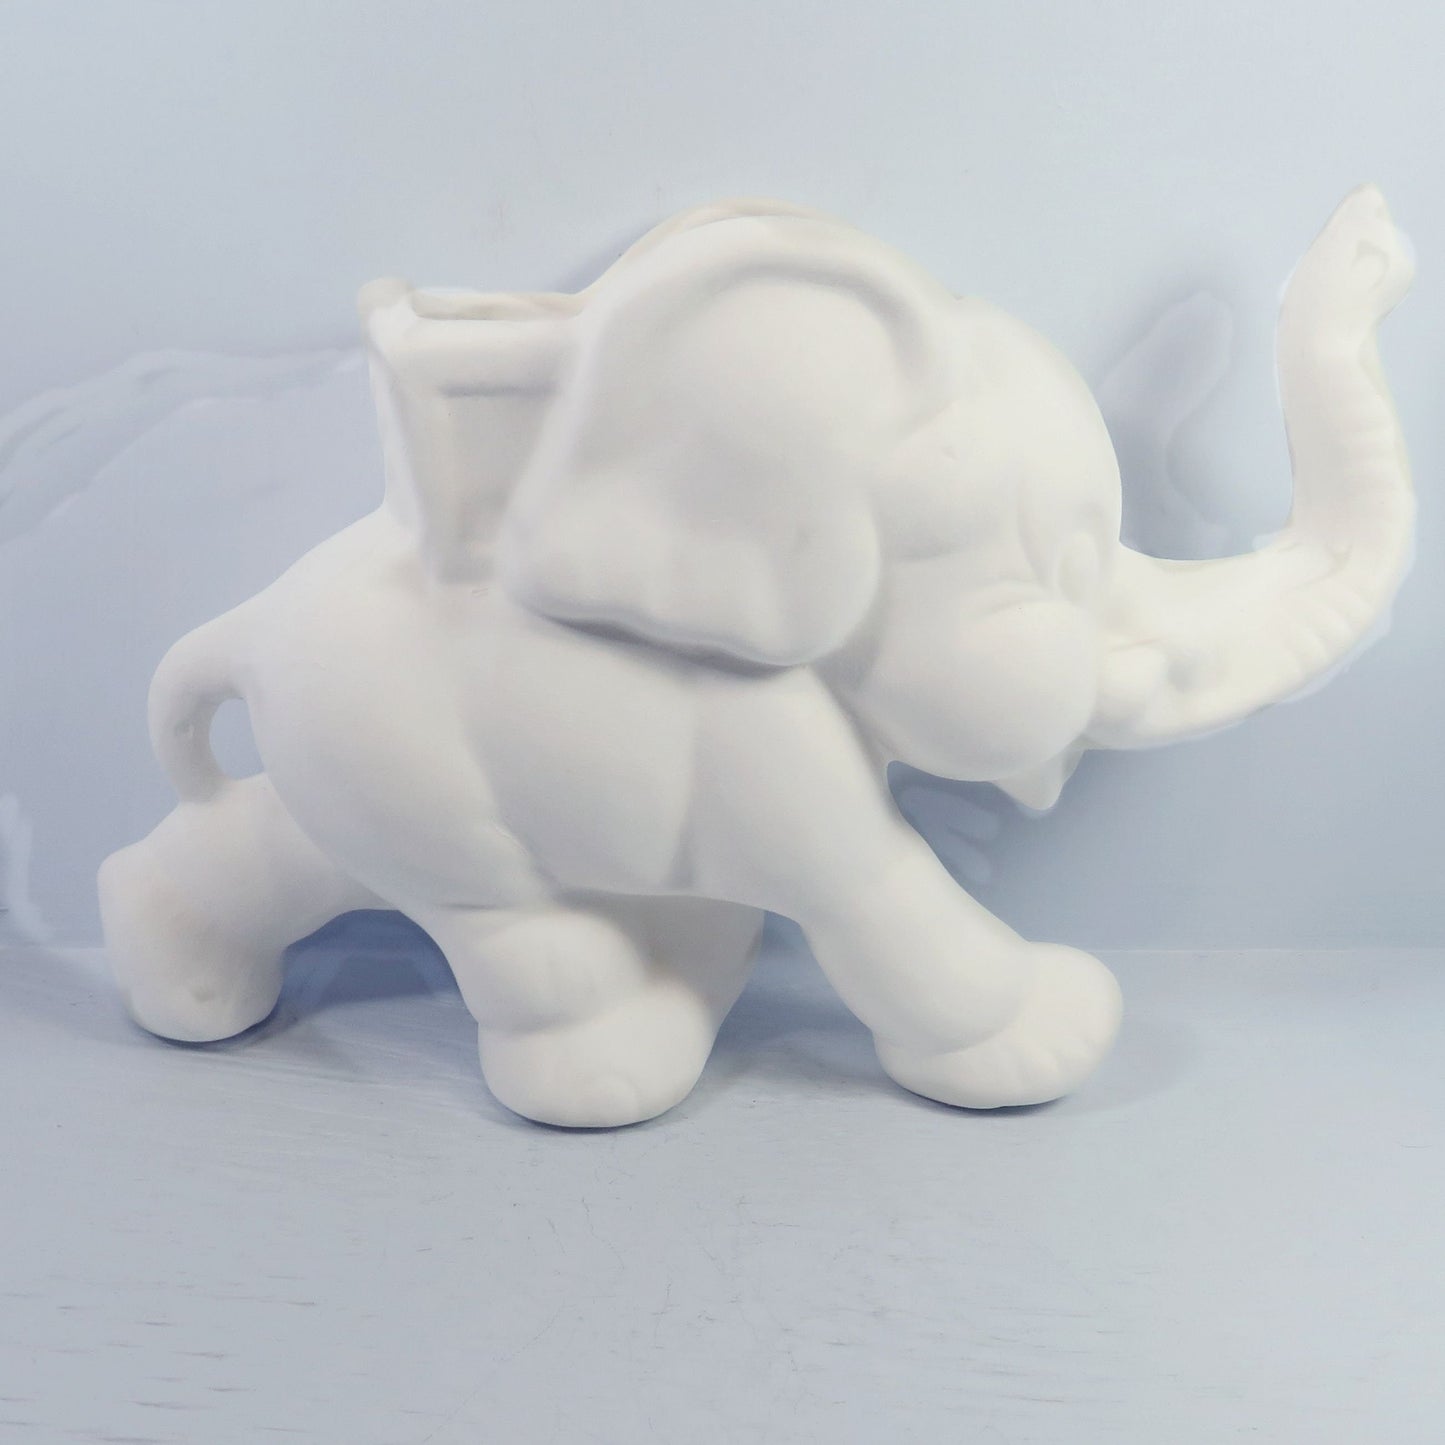 Ready to Paint Handmade Ceramic Bisque Elephant Pot Figurine / Elephant Decor / Elephant Gift / Paintable Ceramics / DIY Ceramics